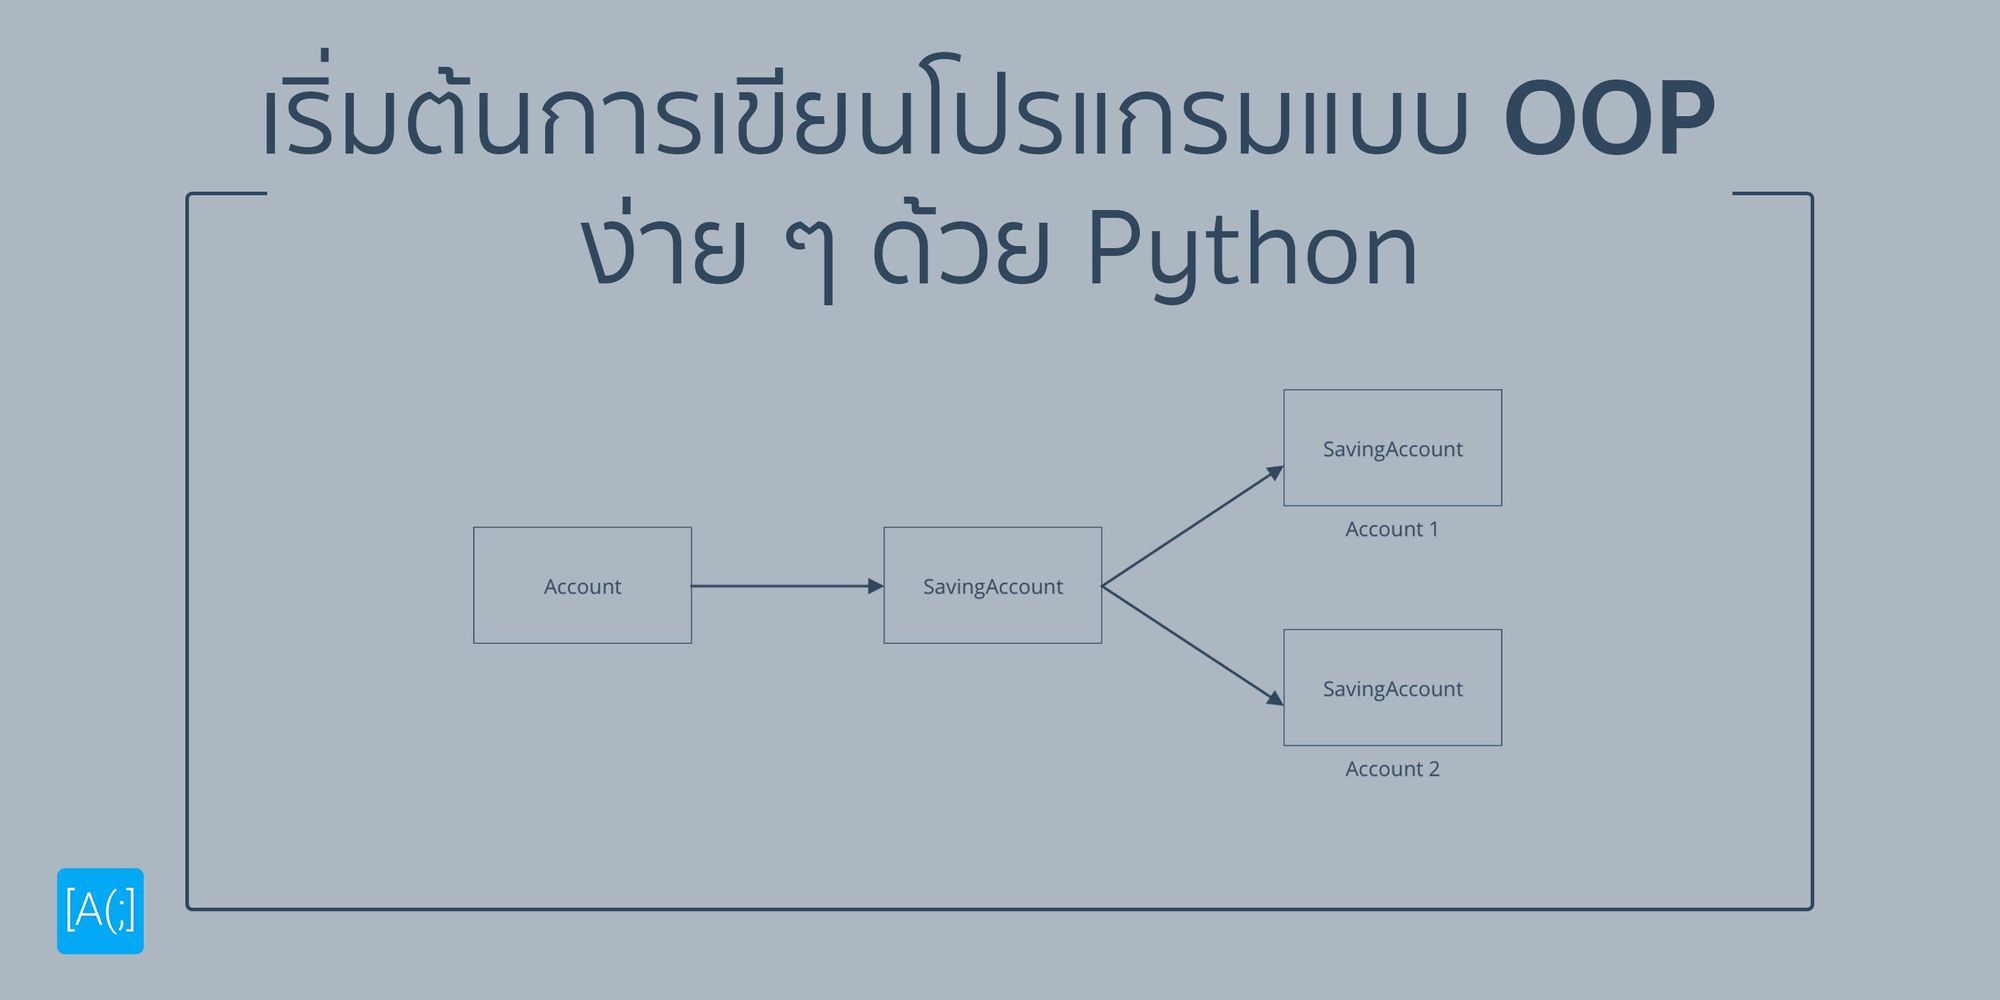 เริ่มต้นการเขียนโปรแกรมแบบ OOP ง่าย ๆ ด้วย Python